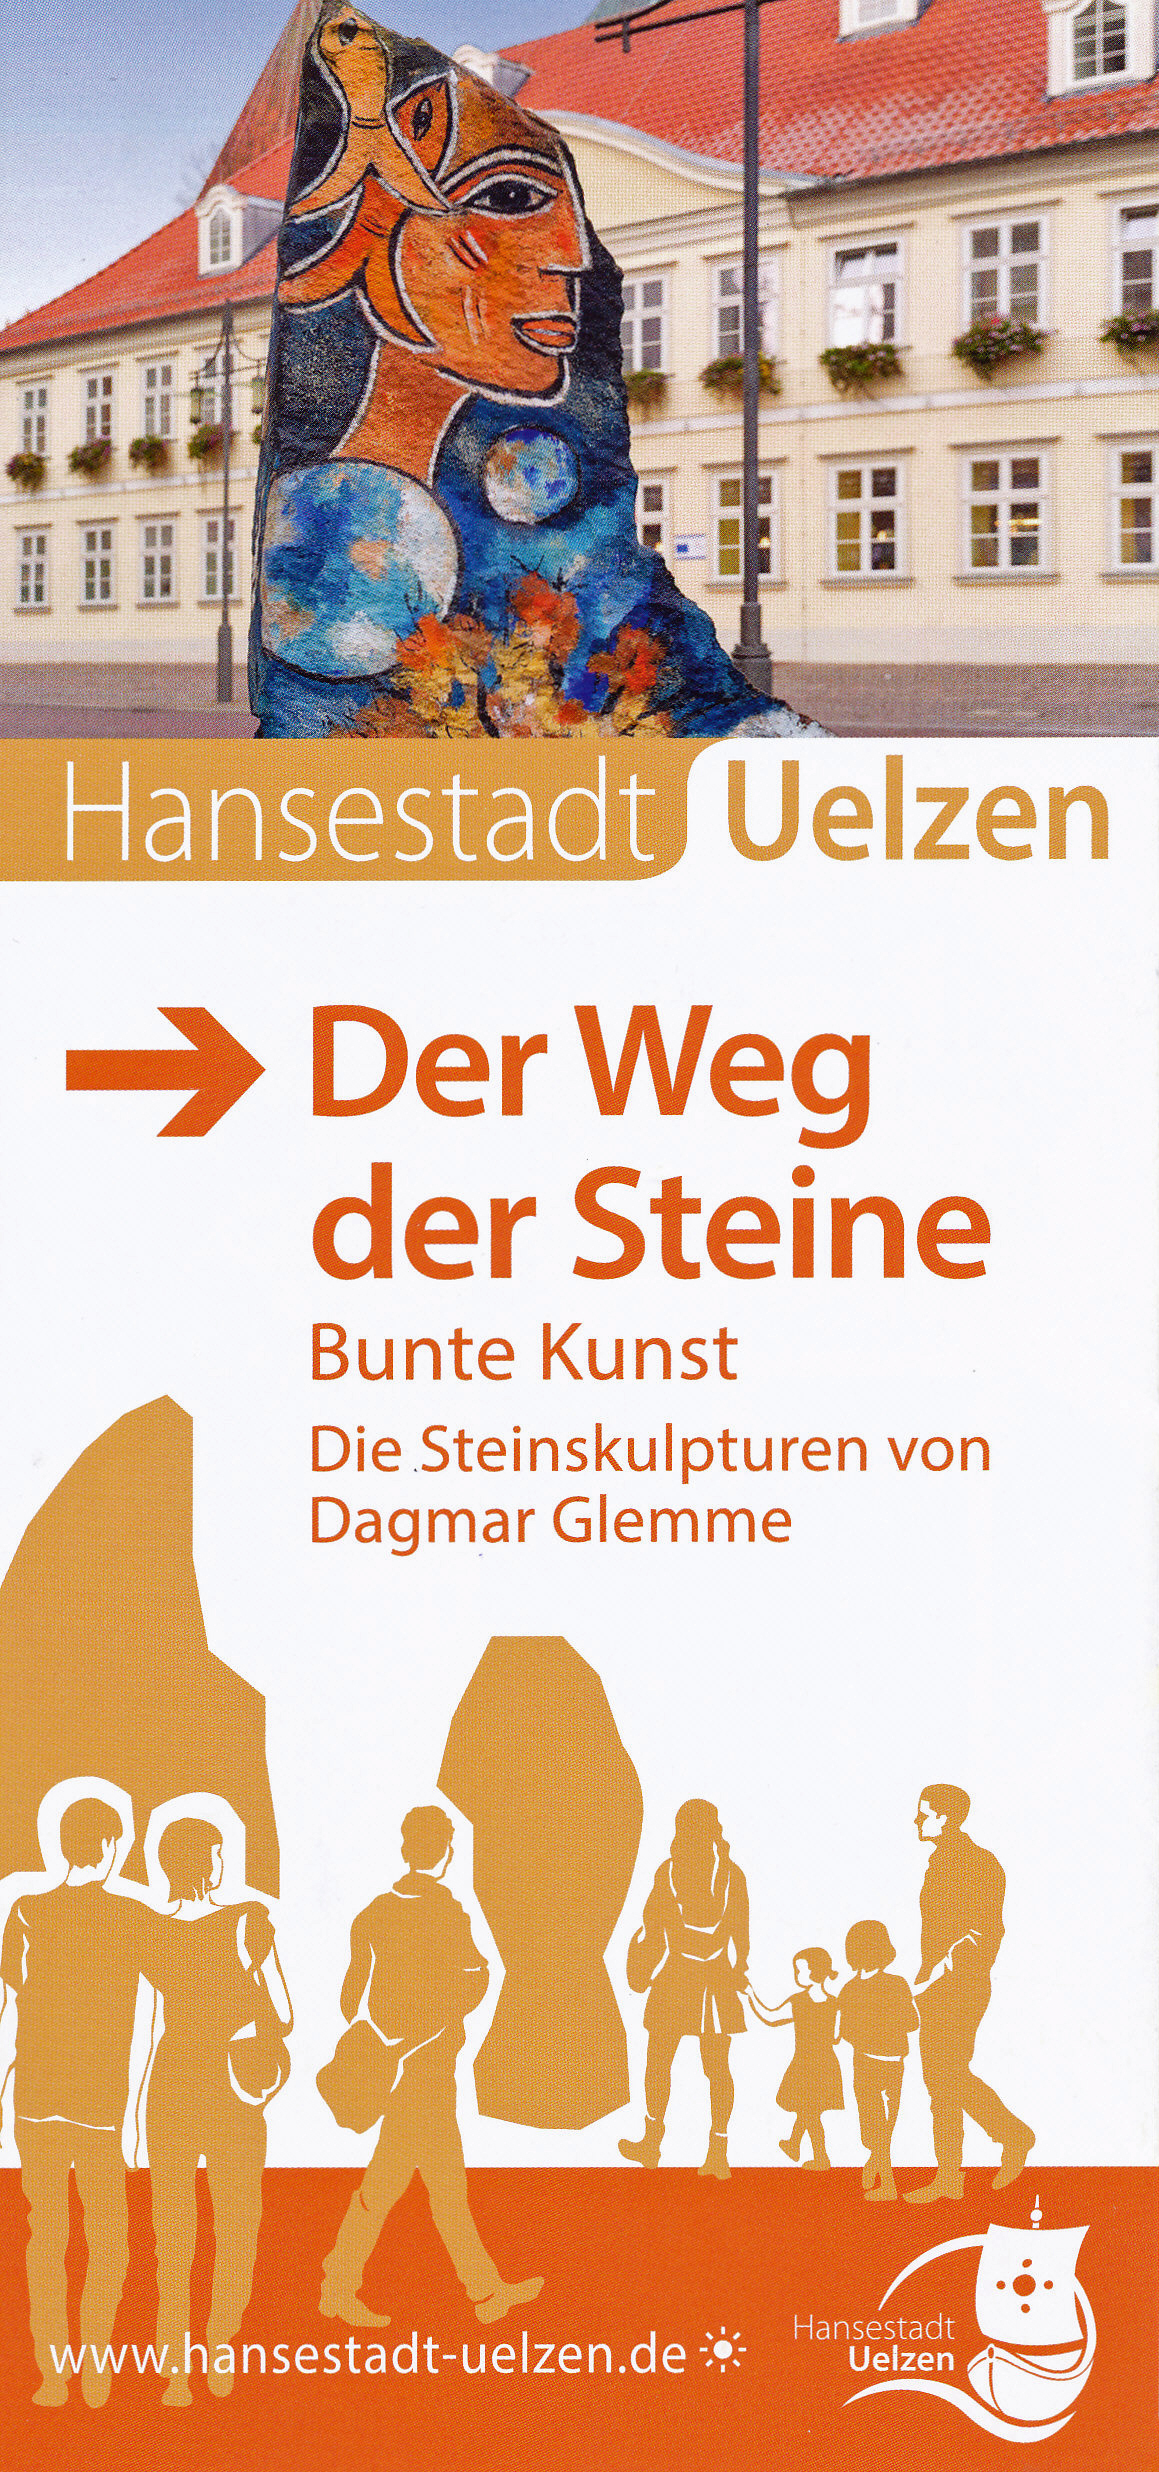 Hansestadt Uelzen |Der Weg der Steine